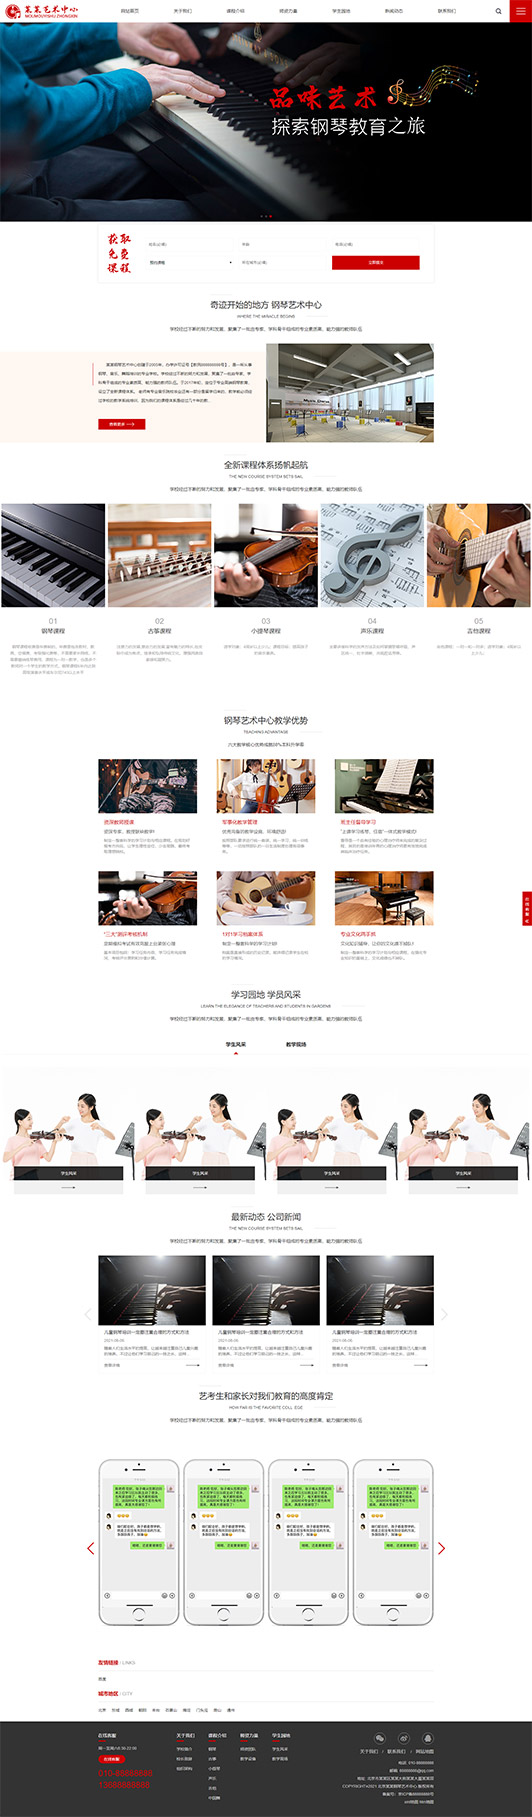 屯昌钢琴艺术培训公司响应式企业网站